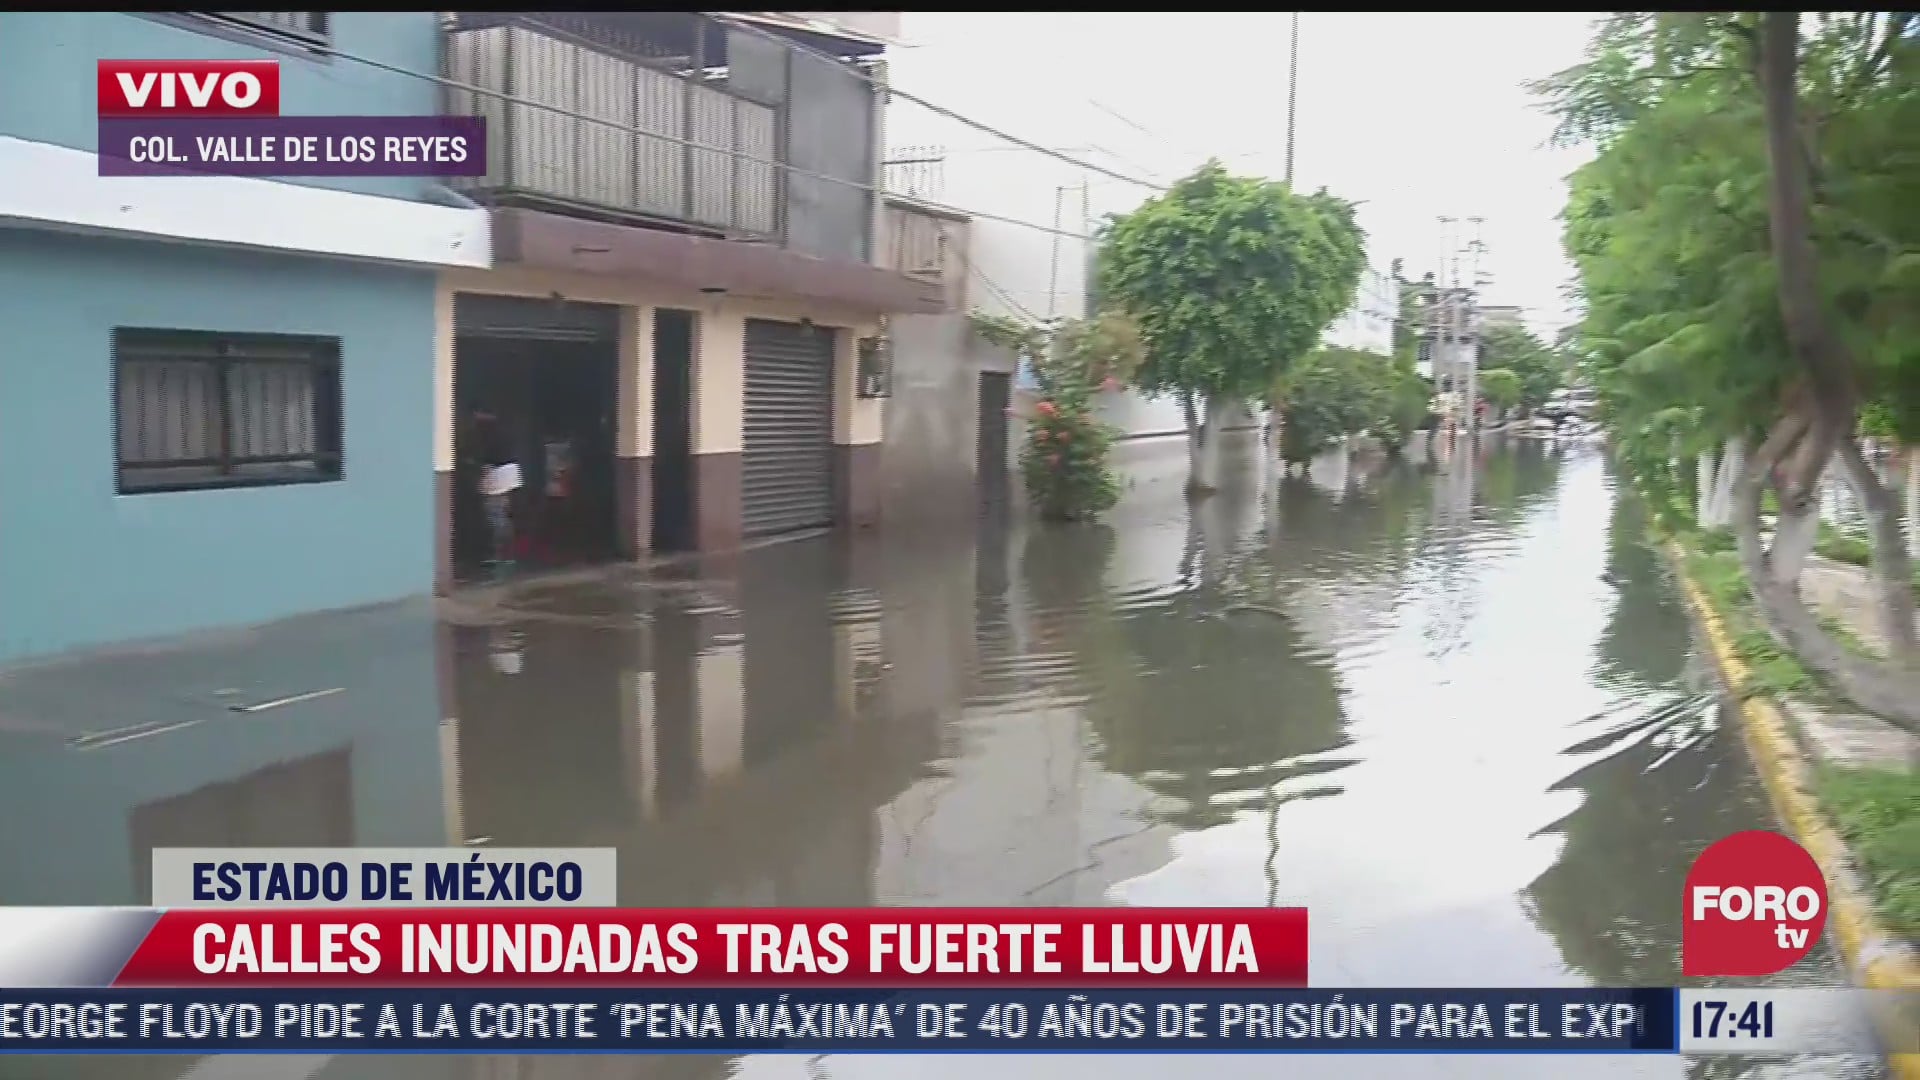 al menos 7 calles sufren inundaciones por lluvias en colonia valle de los reyes